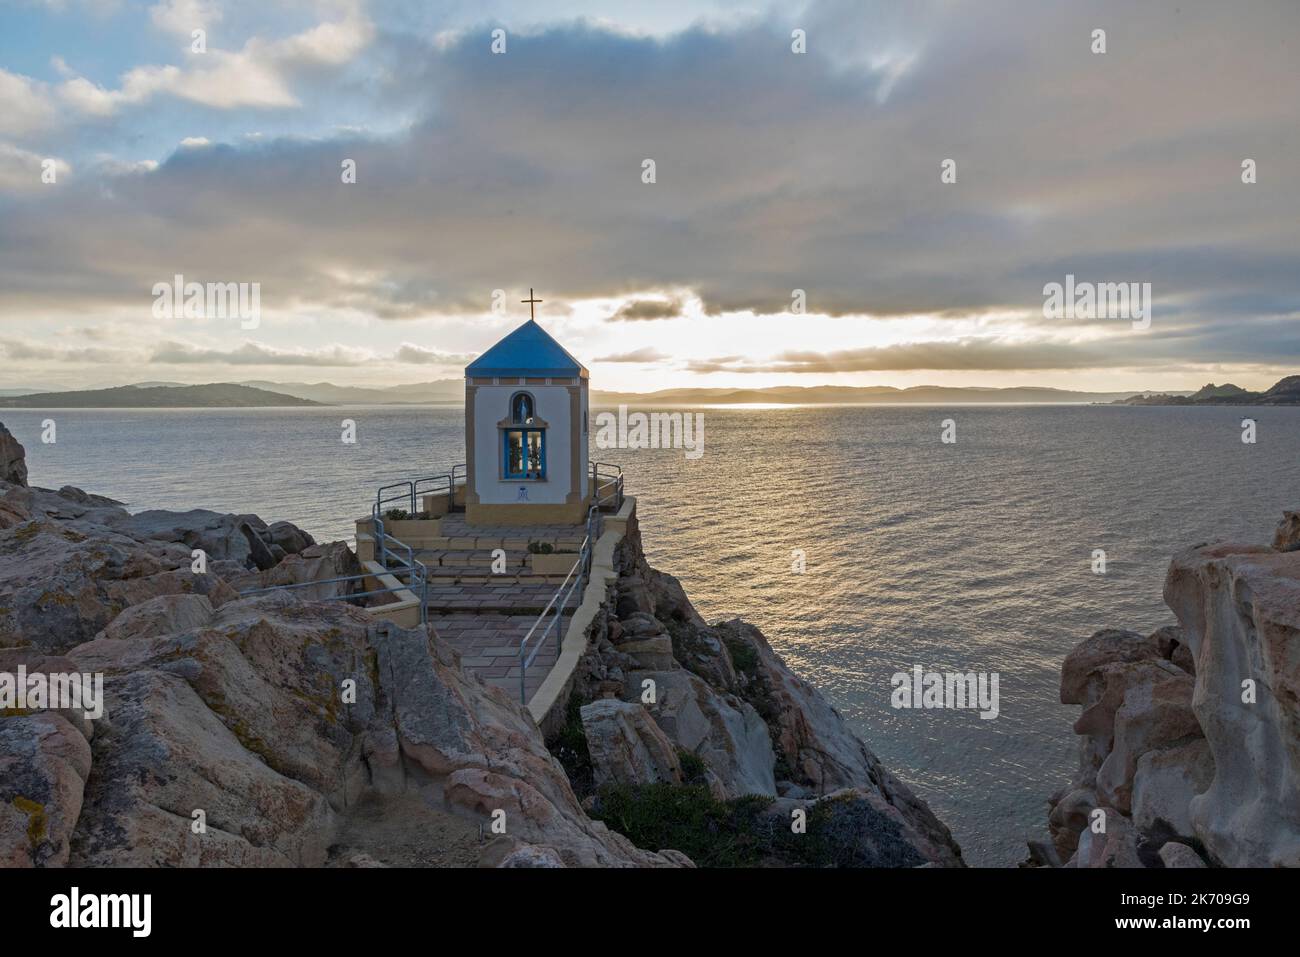 La chiesa sul mare, Sardegna Stock Photo